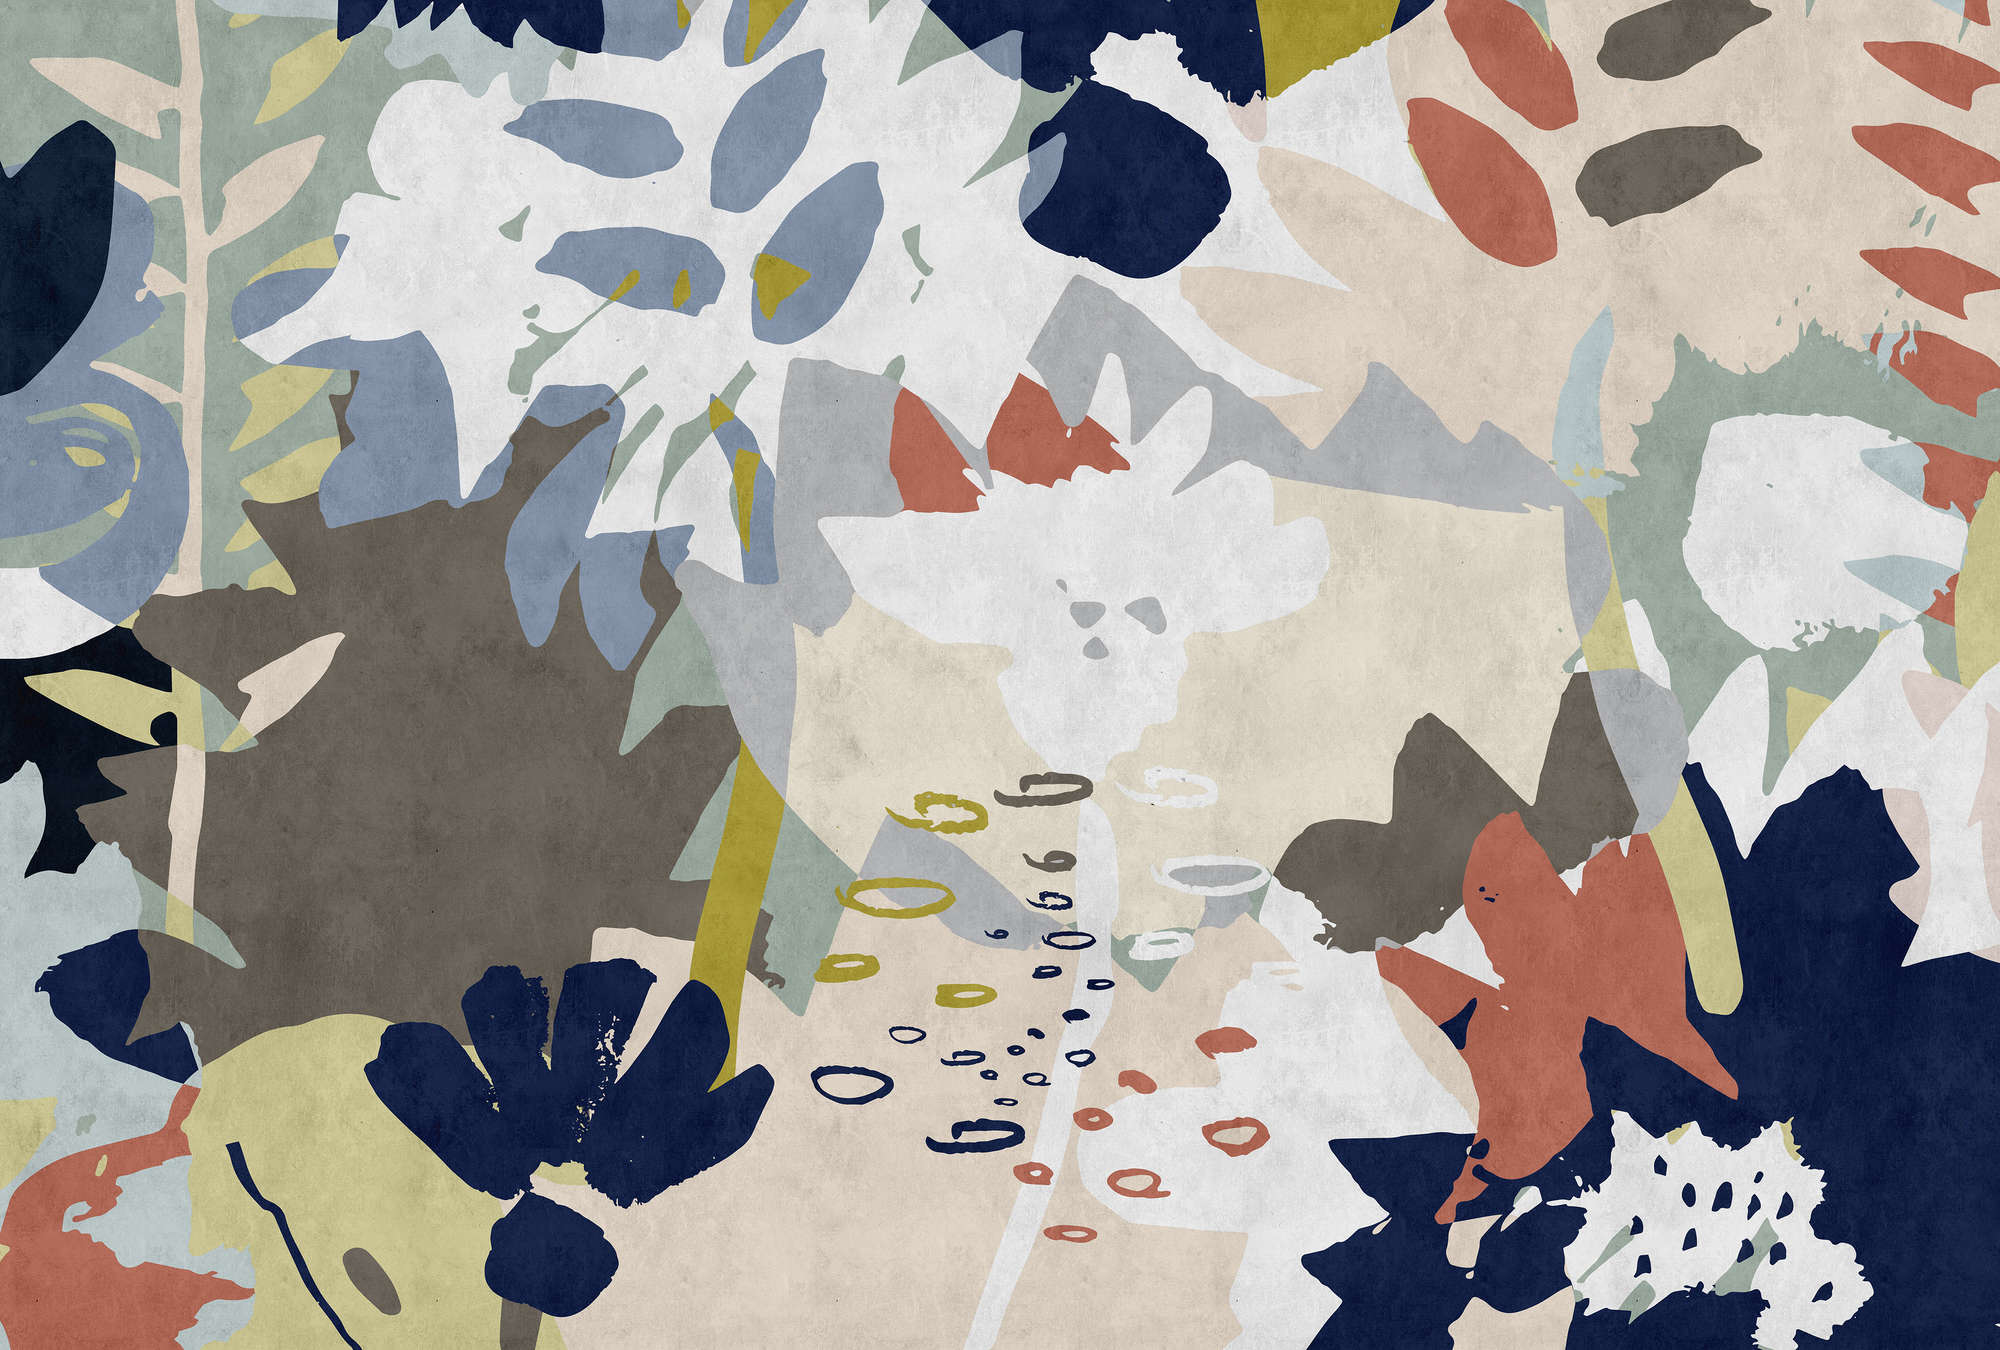             Collage Floral 4 - Fotomural con motivo de hojas de colores - estructura de papel secante - Azul, Marrón | Estructura no tejida
        